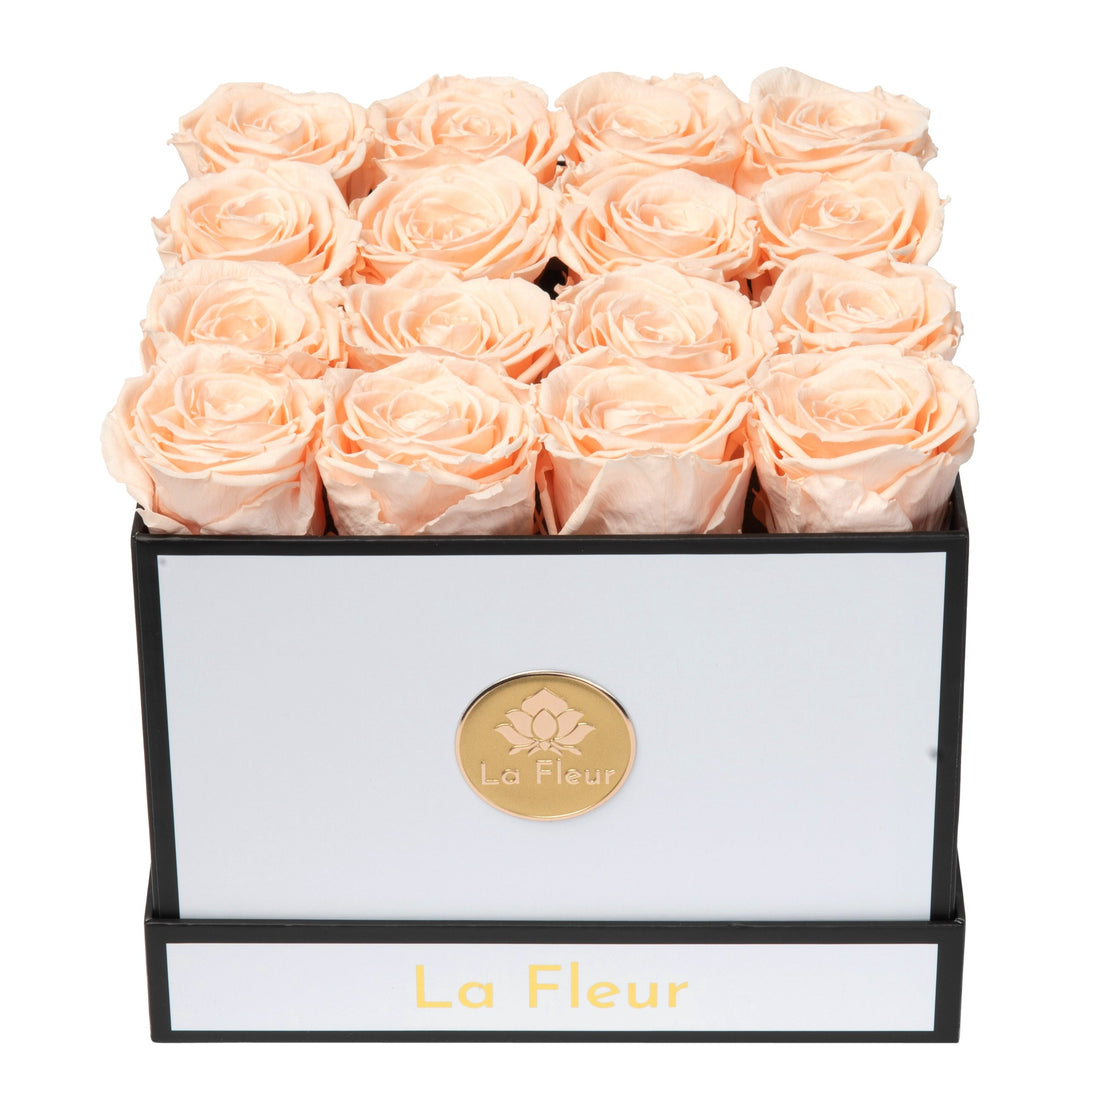 Petite Square by La Fleur Lifetime Flowers